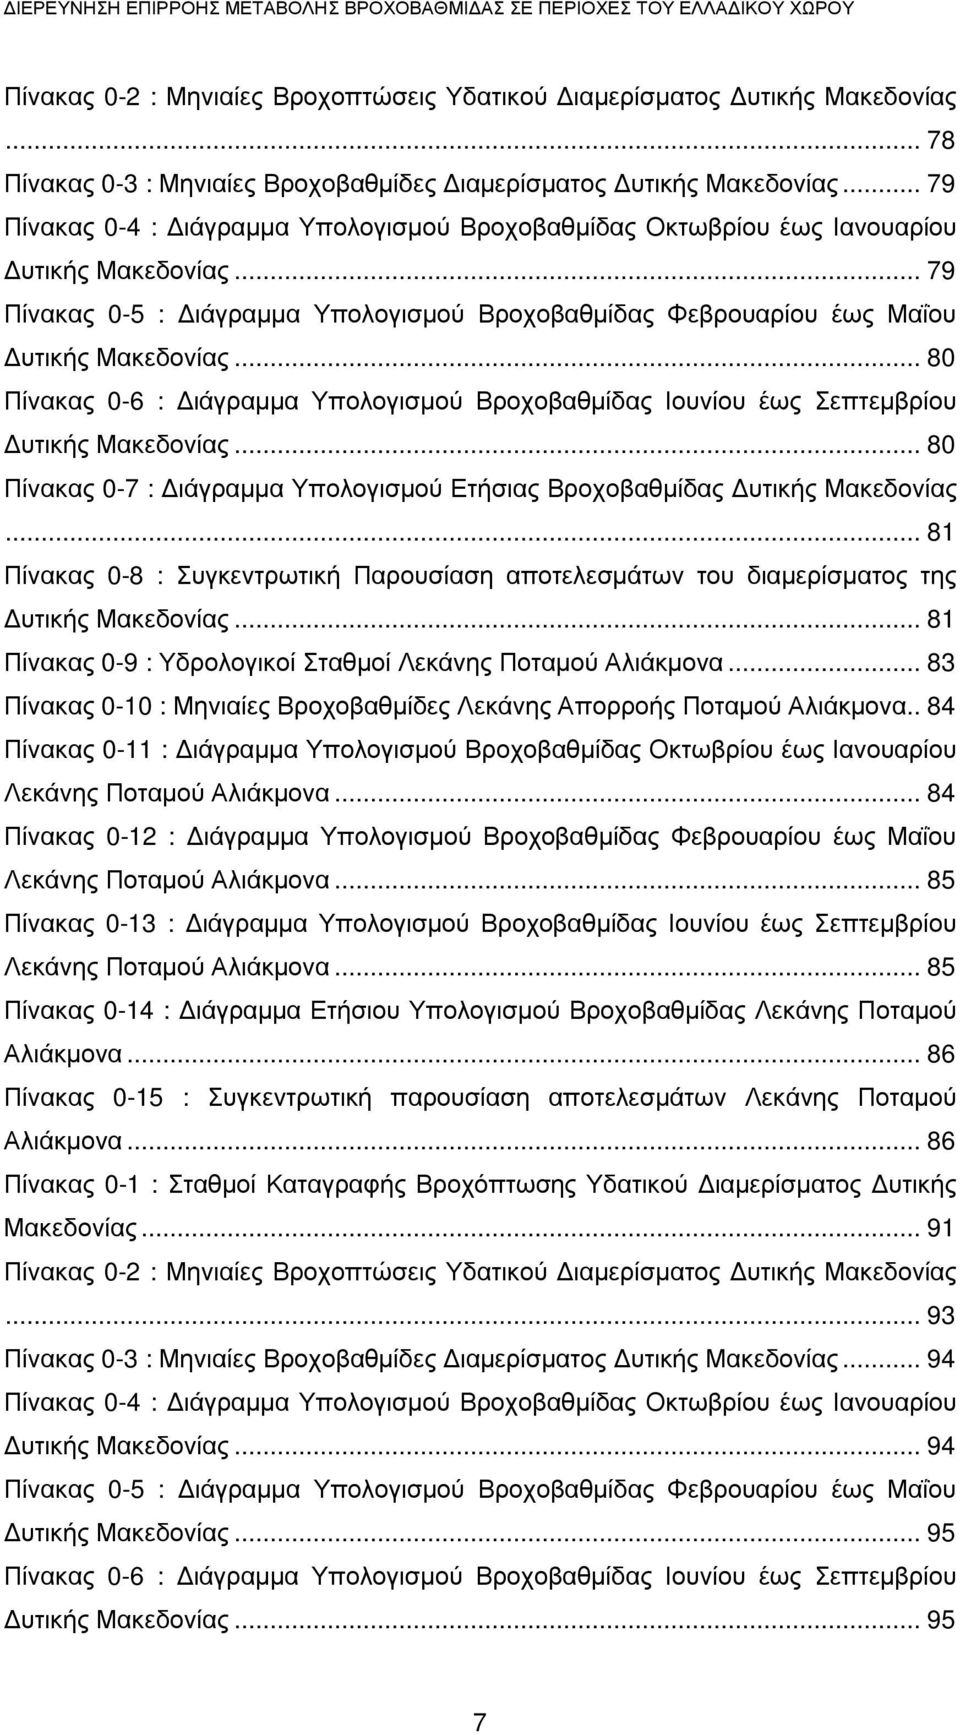 .. 79 Πίνακας 0-5 : ιάγραµµα Υπολογισµού Βροχοβαθµίδας Φεβρουαρίου έως Μαΐου υτικής Μακεδονίας... 80 Πίνακας 0-6 : ιάγραµµα Υπολογισµού Βροχοβαθµίδας Ιουνίου έως Σεπτεµβρίου υτικής Μακεδονίας.